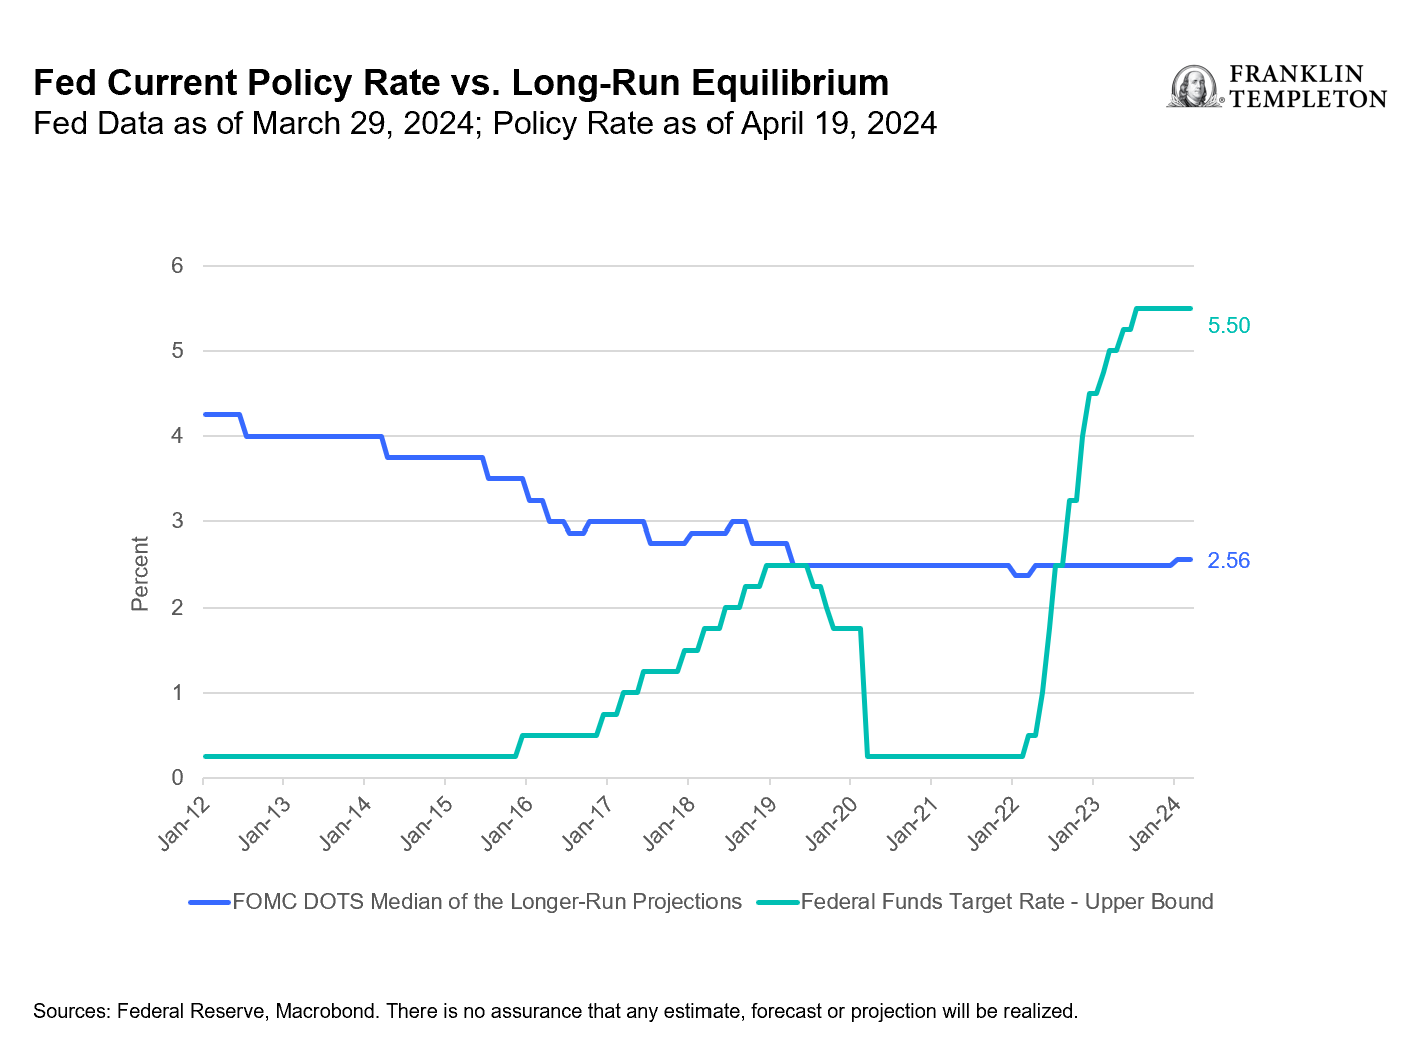 美联储当前政策利率与长期均衡利率